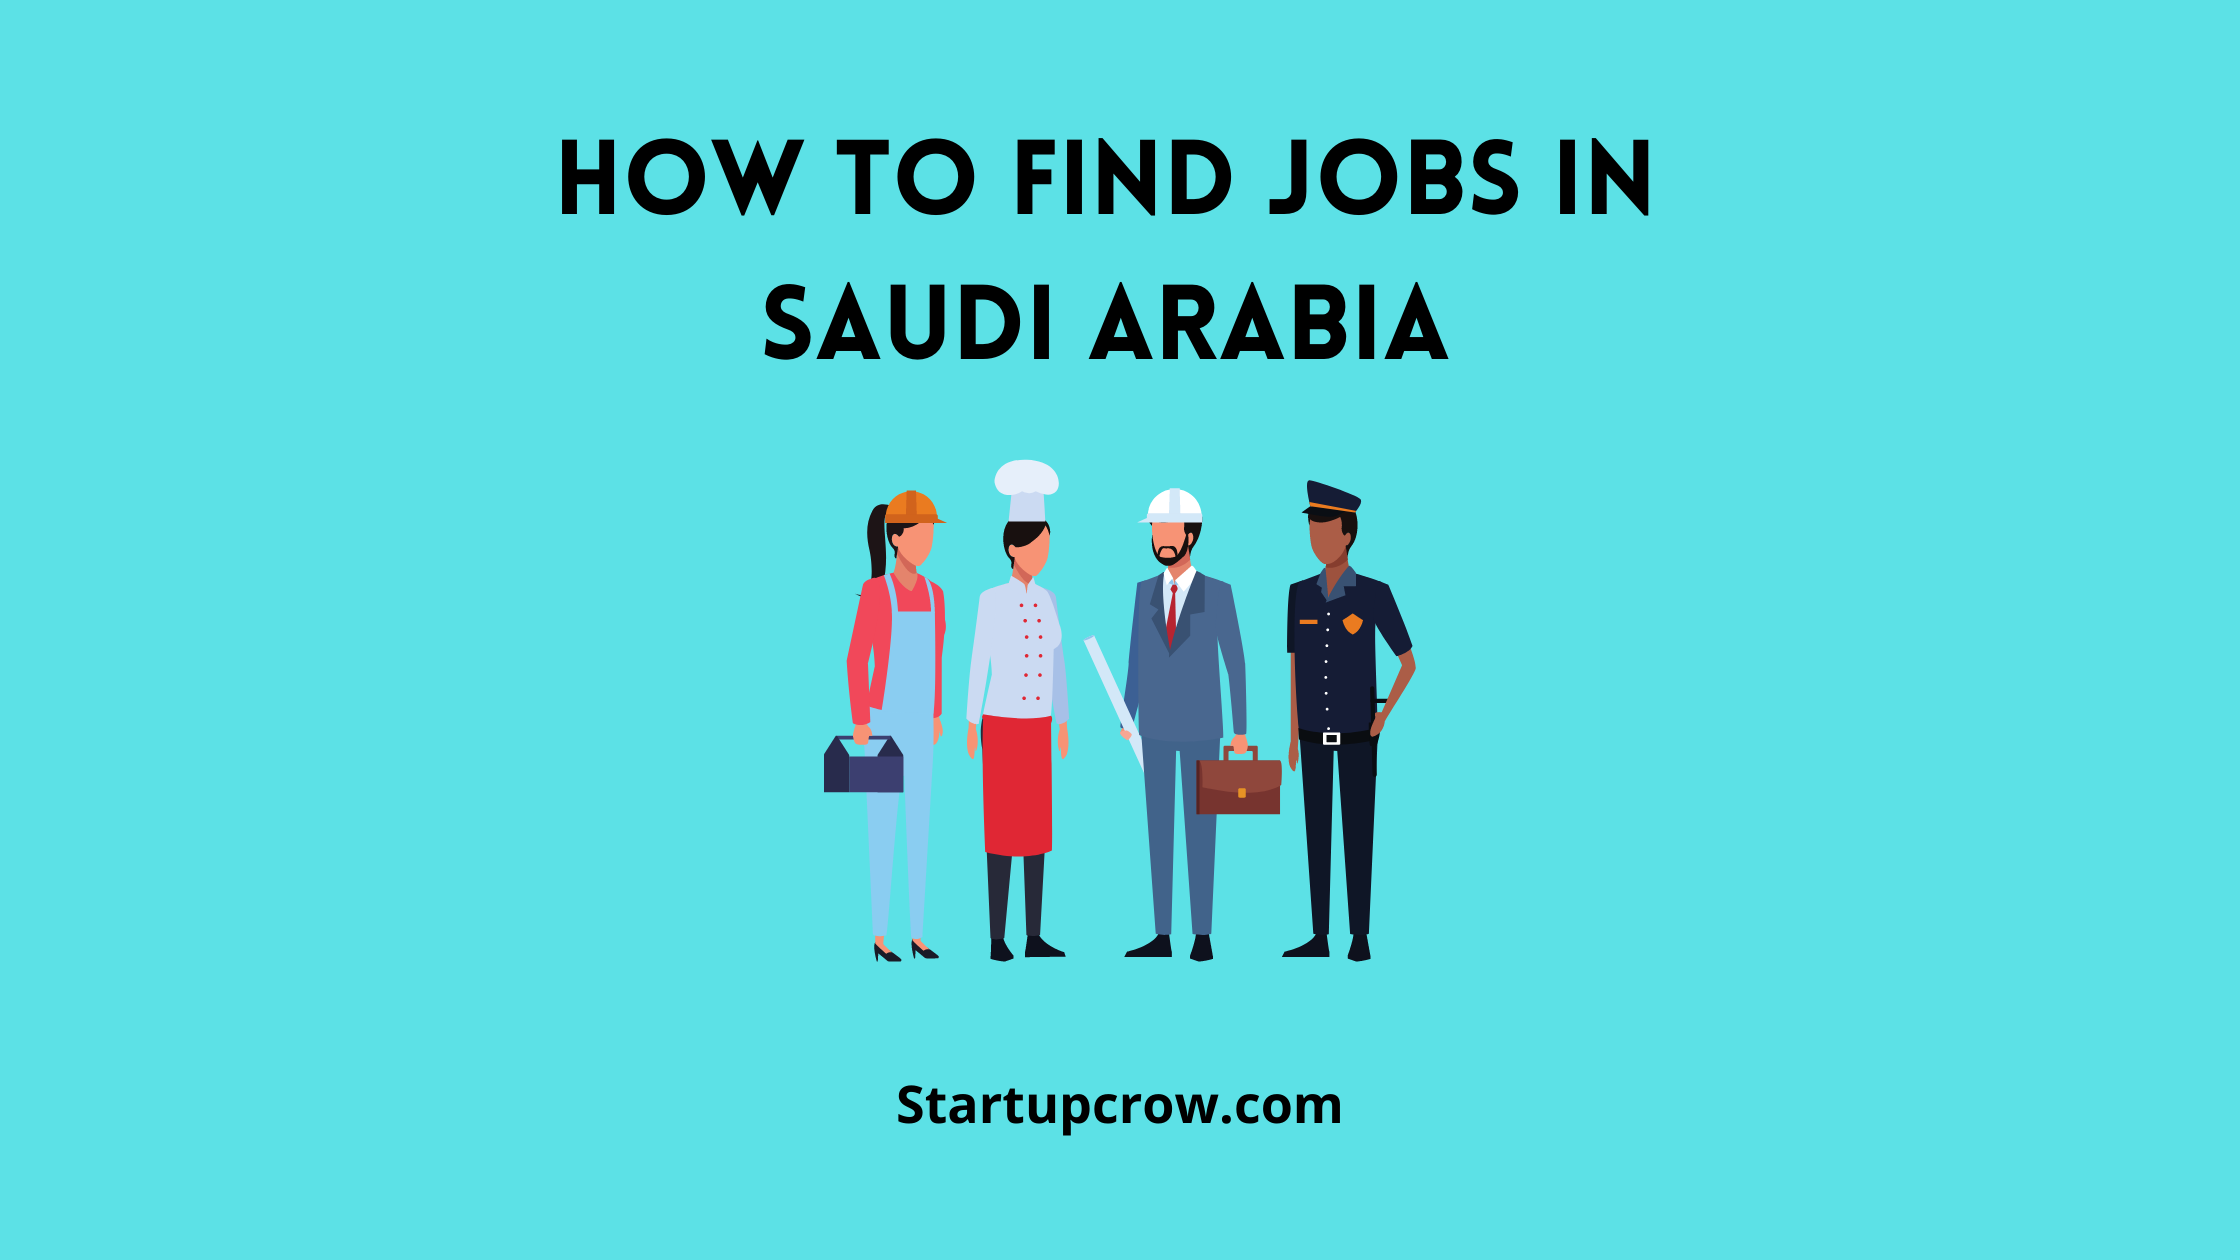 How to Find Jobs in Saudi Arabia